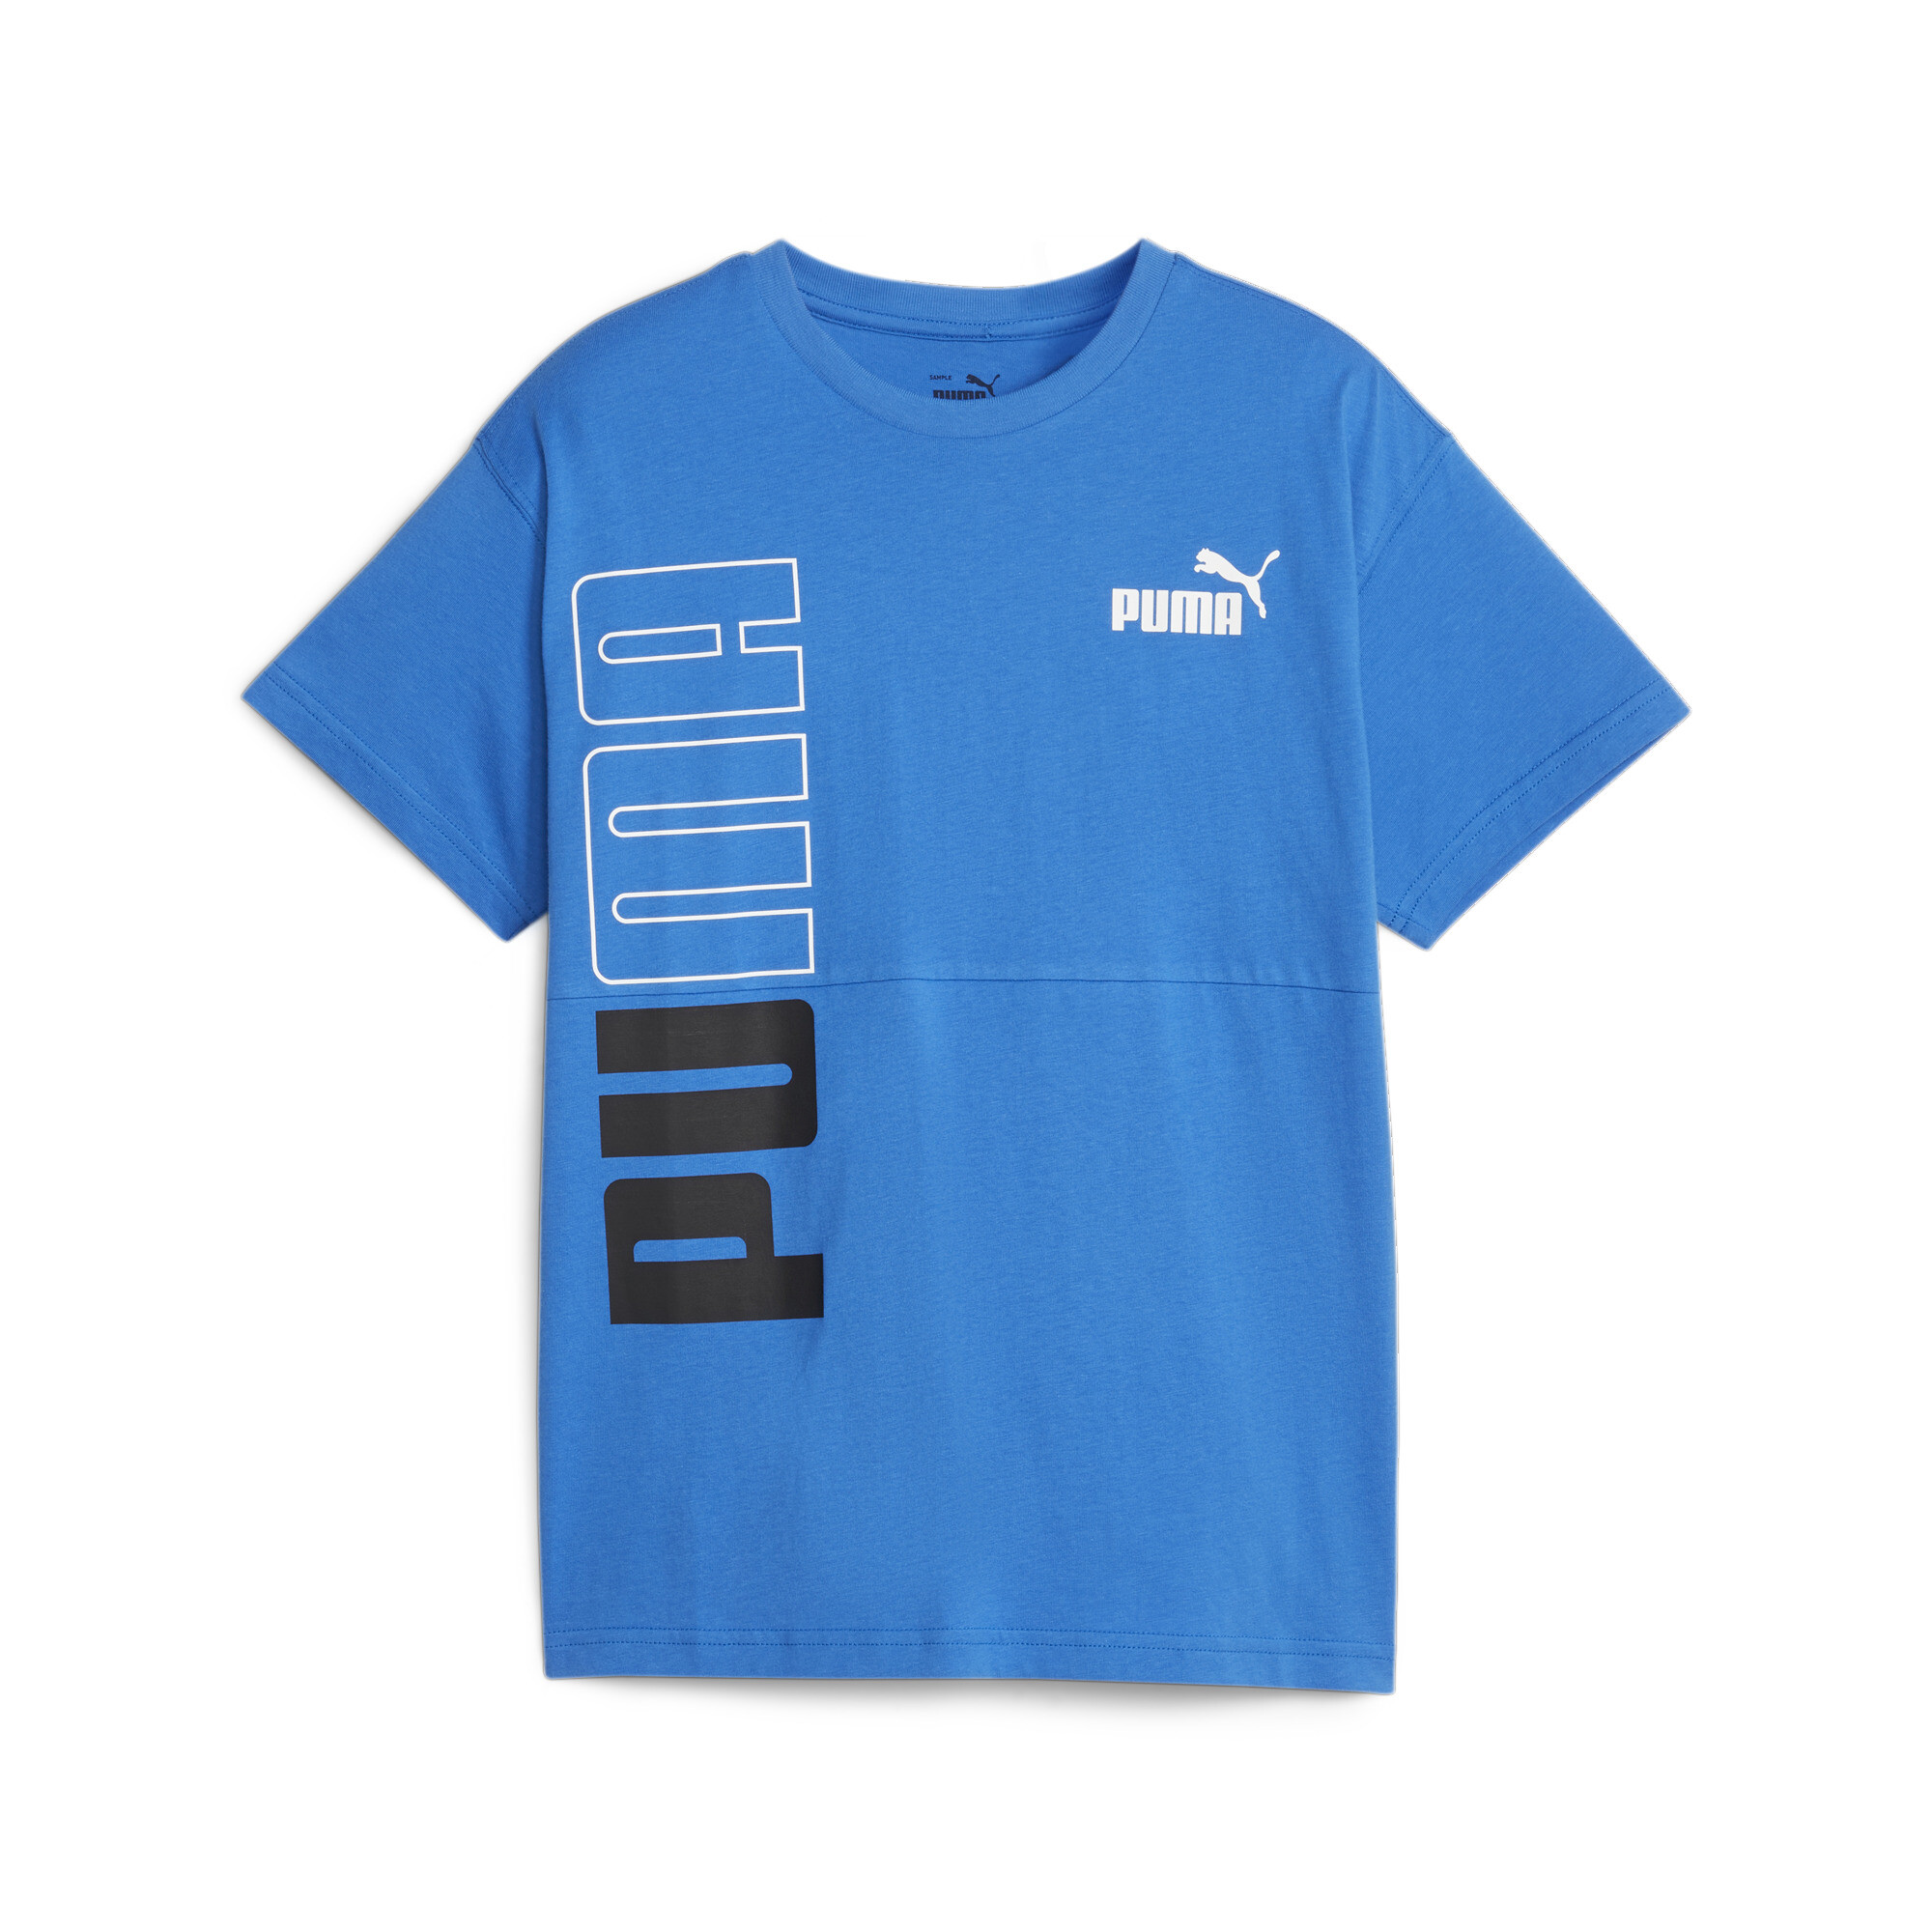 ＜プーマ公式通販＞ プーマ キッズ ボーイズ PUMA POWER カラーブロック Tシャツ 120-160cm メンズ Racing Blue ｜PUMA.com